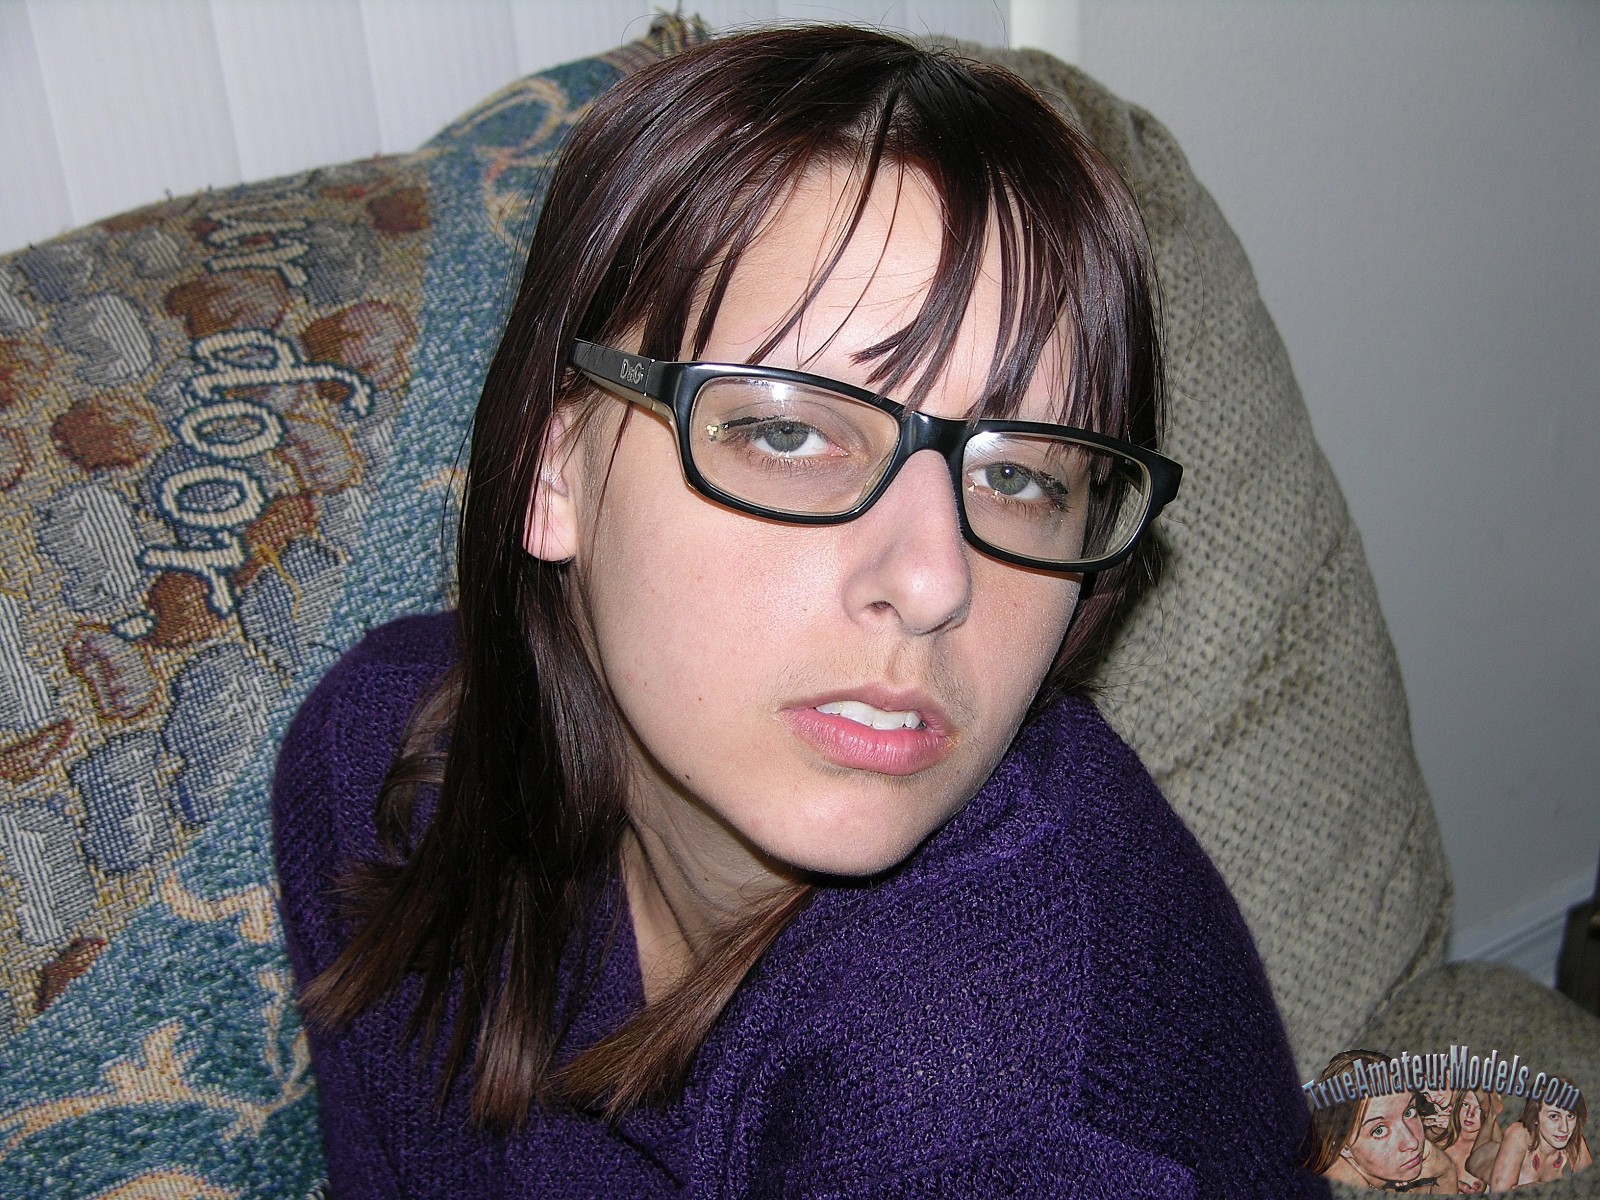 xpics - sex in glasses Amateur nerd shows hairy asshole picture